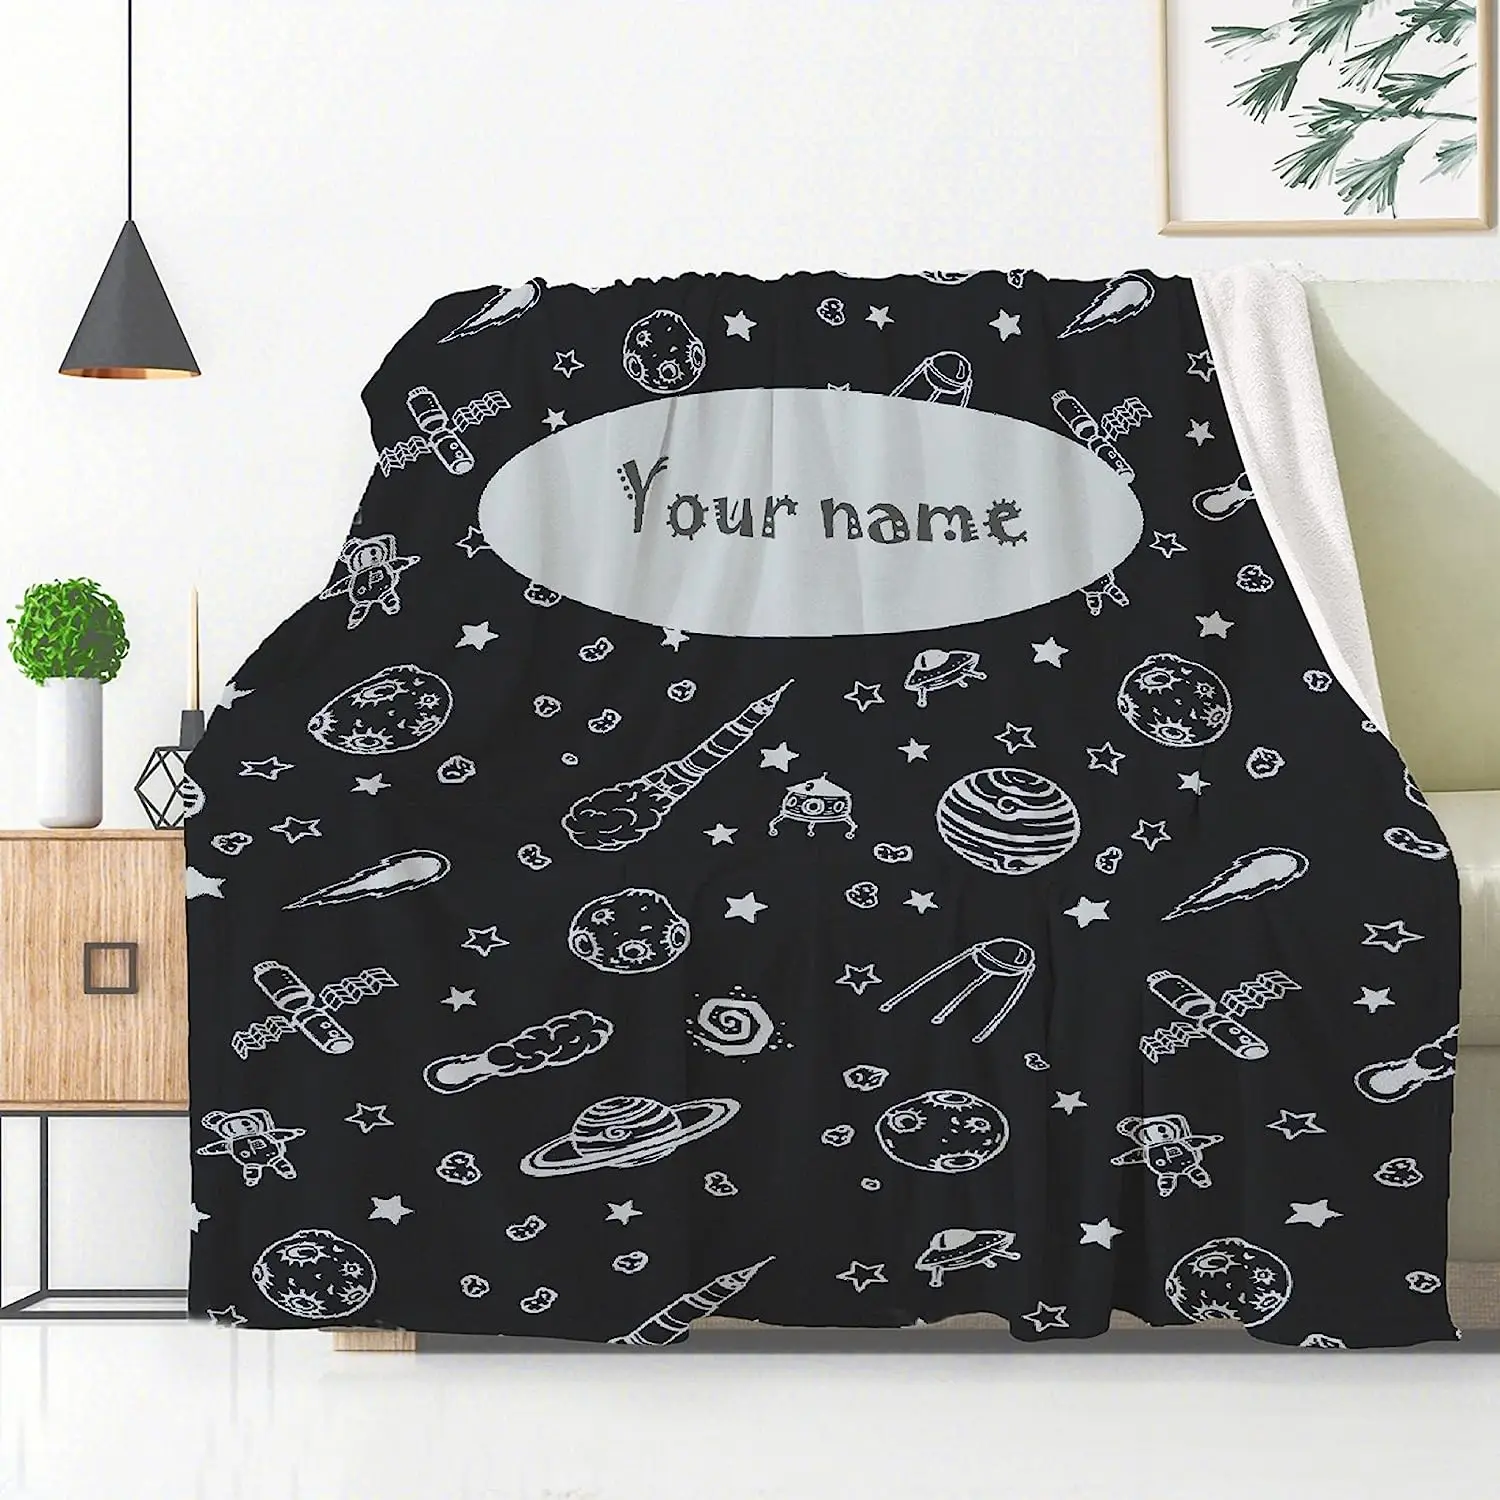 

Индивидуальные детские одеяла, мягкое одеяло с изображением астронавта, галактики, космоса, подарок для новорожденных